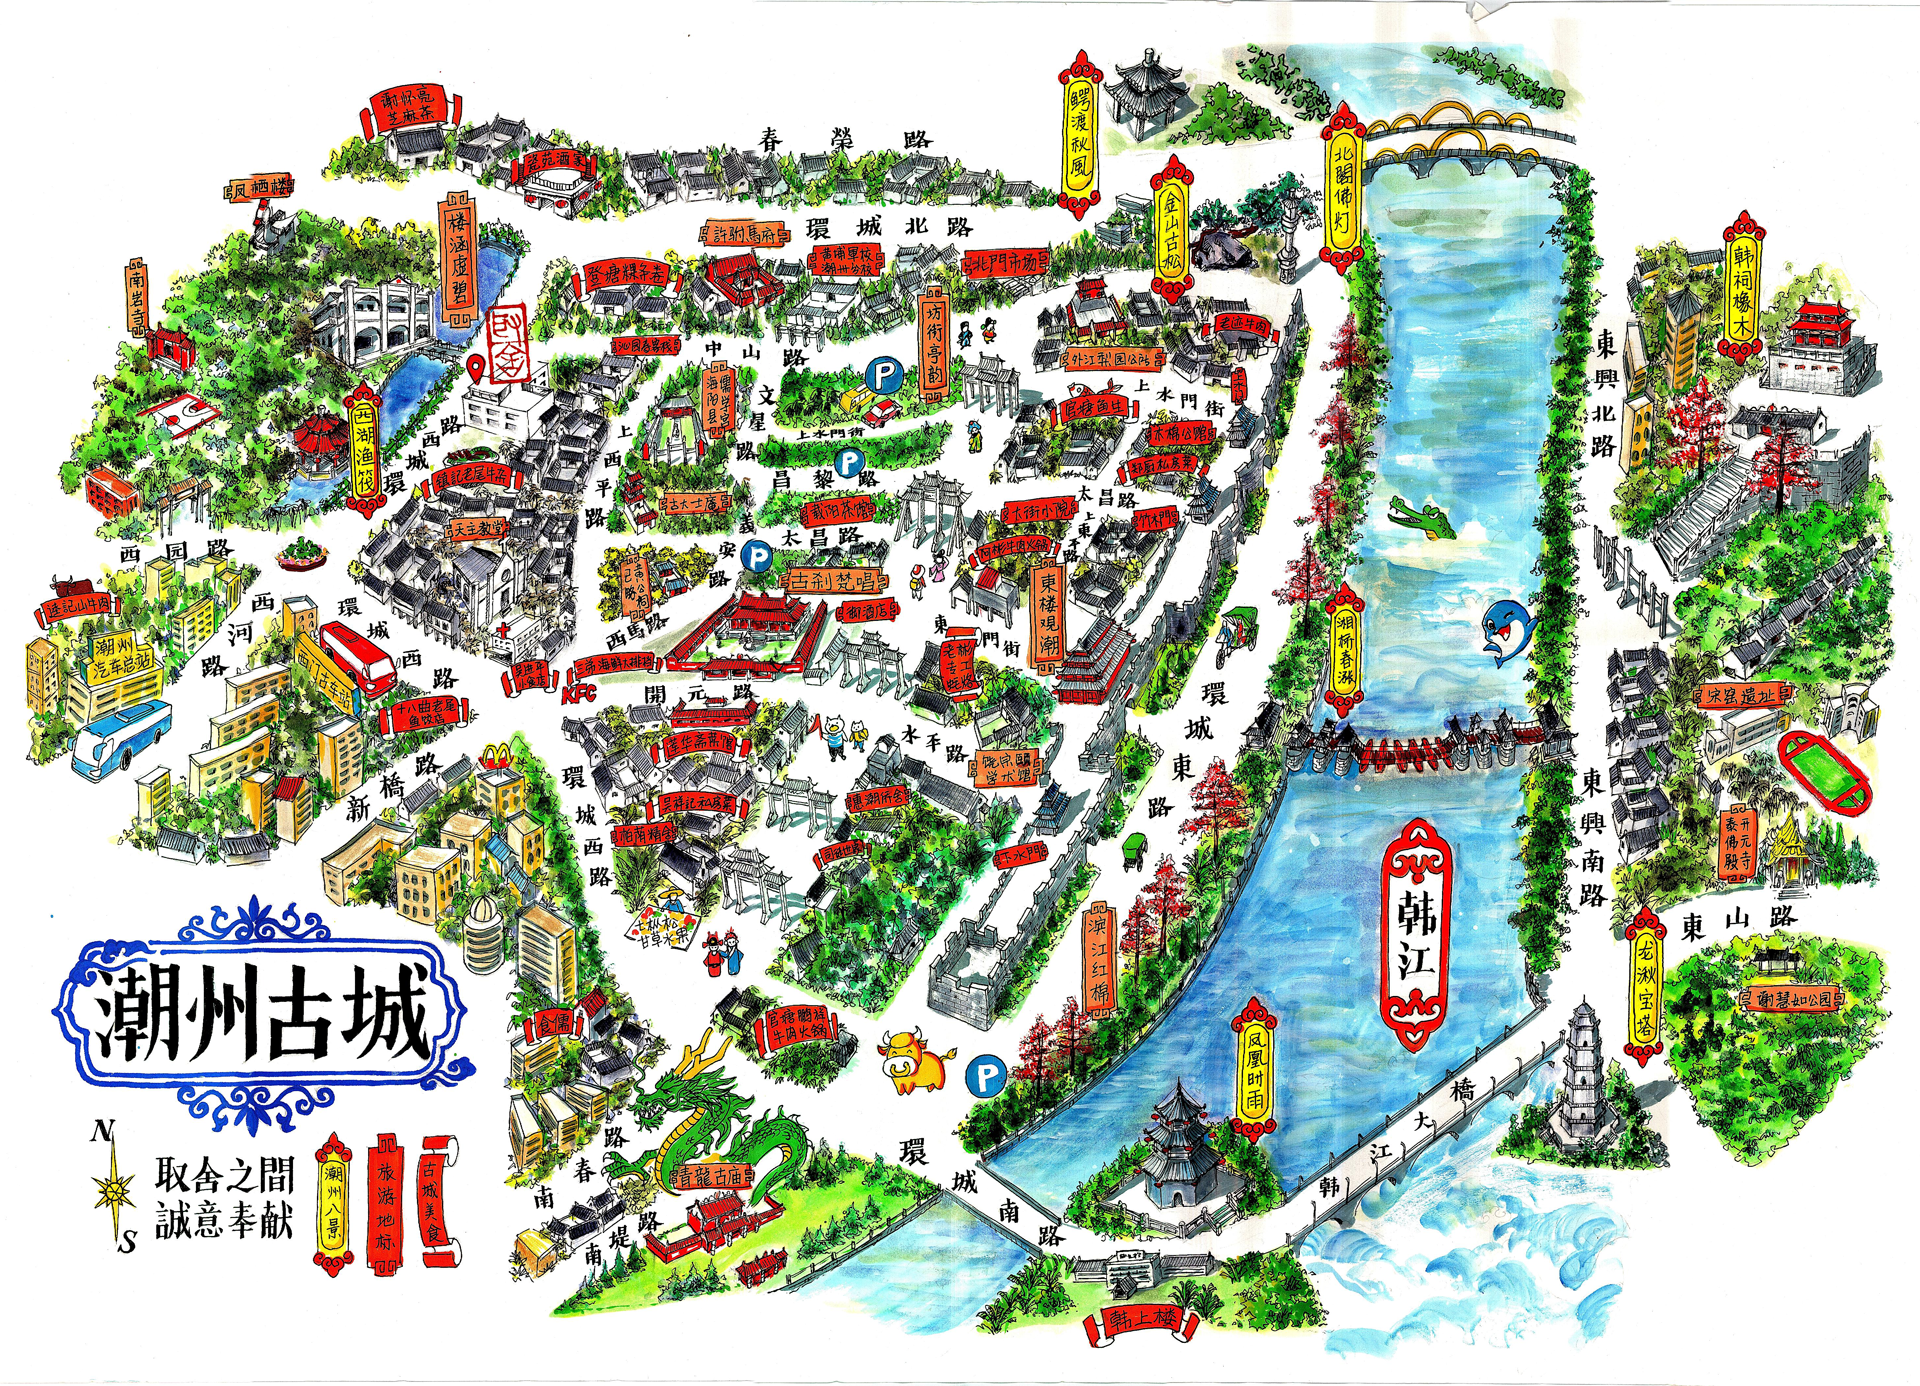            潮州古城的地图,由主